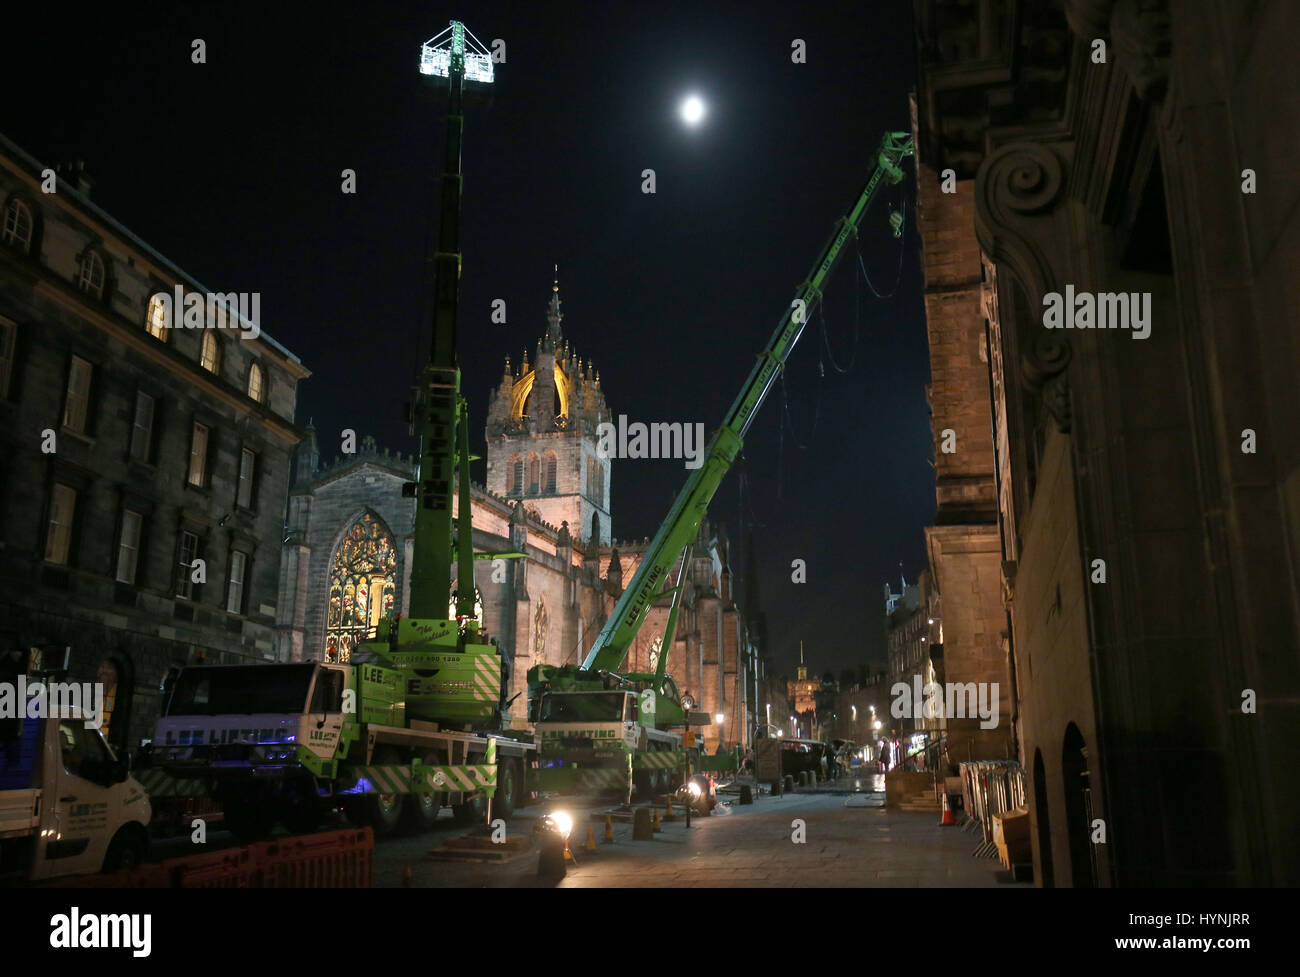 La Cattedrale di St Giles sul Royal Mile di Edimburgo, è illuminata per formare parte del set durante le riprese del film di Hollywood i vendicatori: guerra infinita. Foto Stock